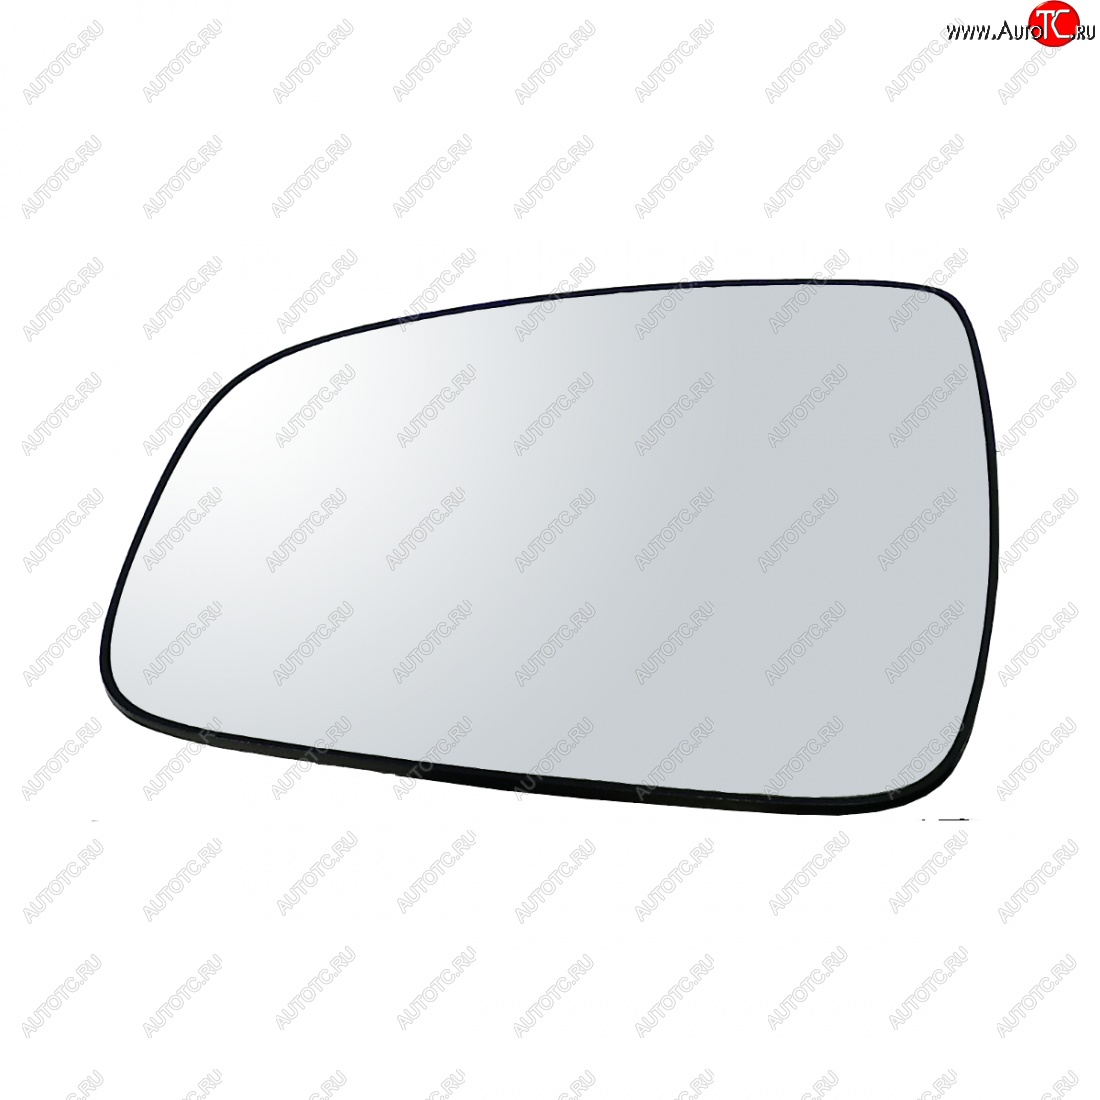 399 р. Левый зеркальный элемент (обогрев) Автоблик2 Nissan Terrano D10 дорестайлинг (2013-2016) (без антибликового покрытия)